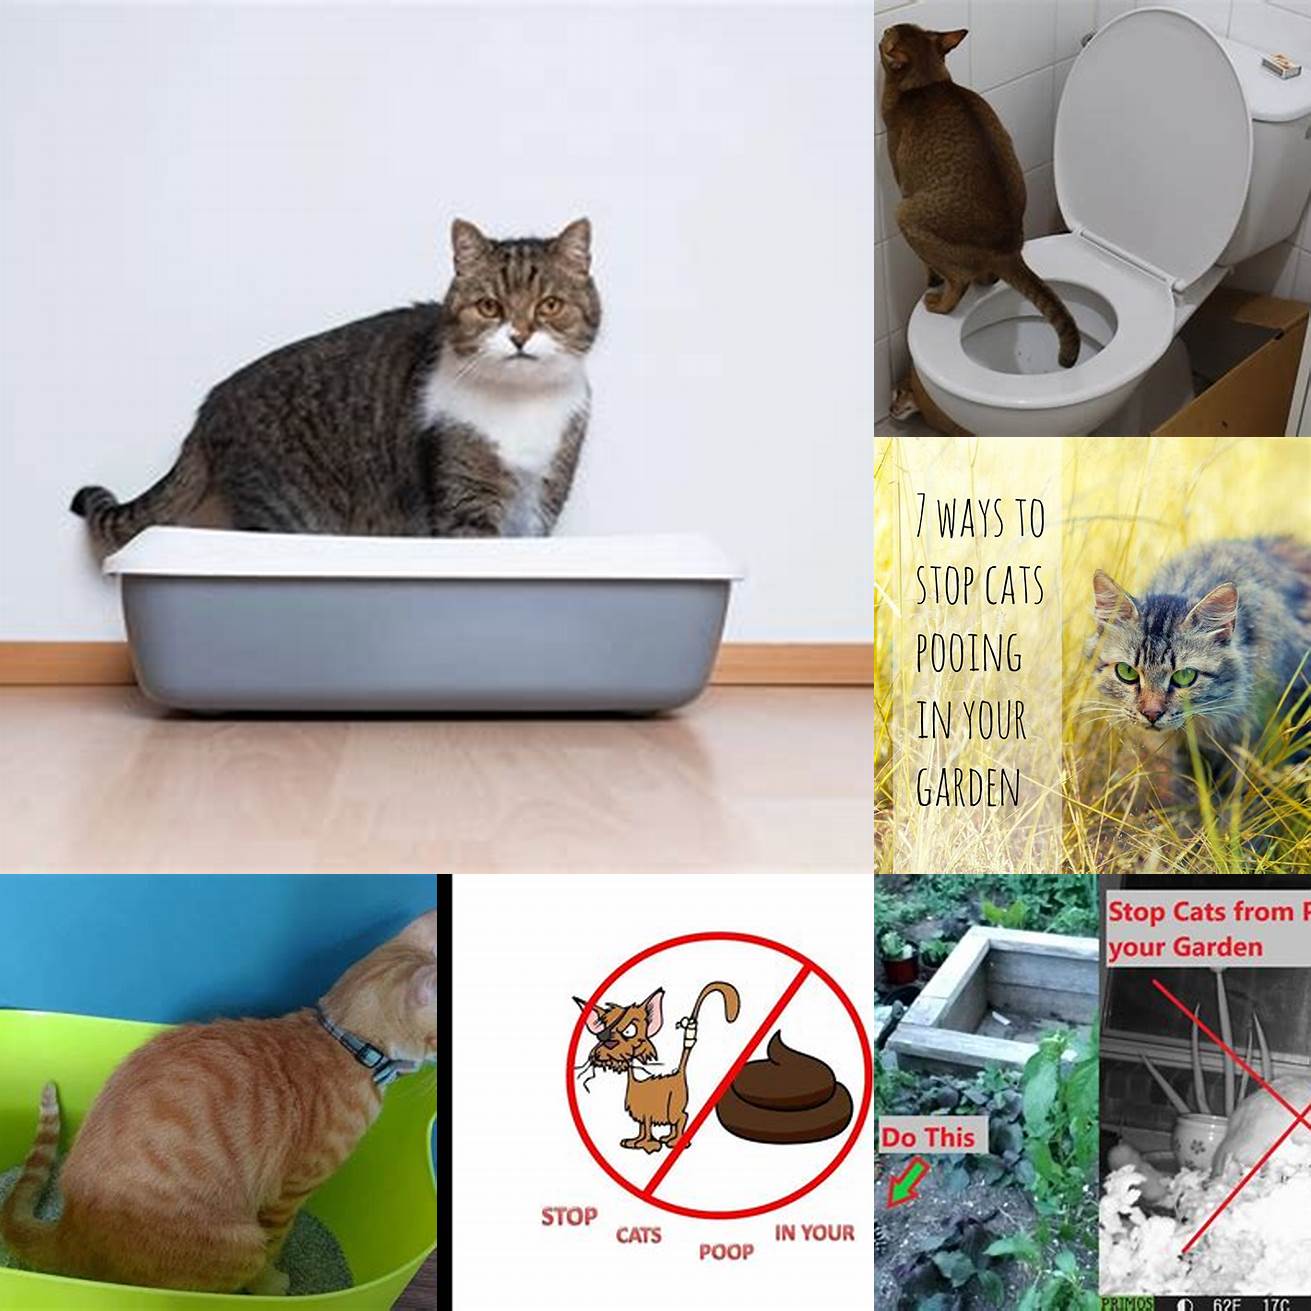 Q Can I put cat poop in the green bin